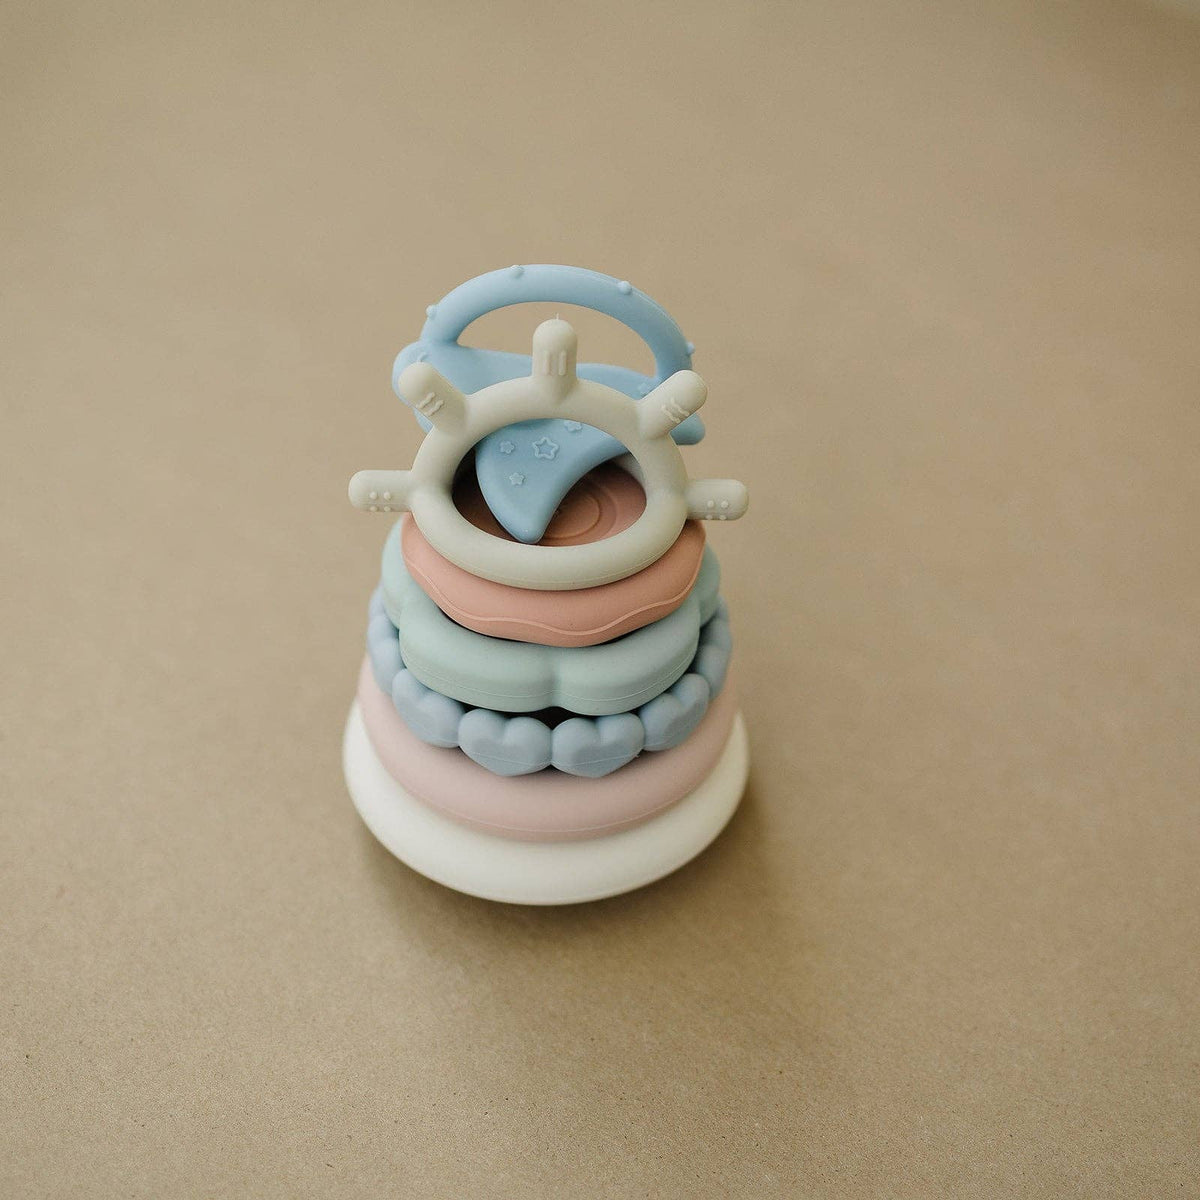 Pastel Stacking Teething Ring Toy